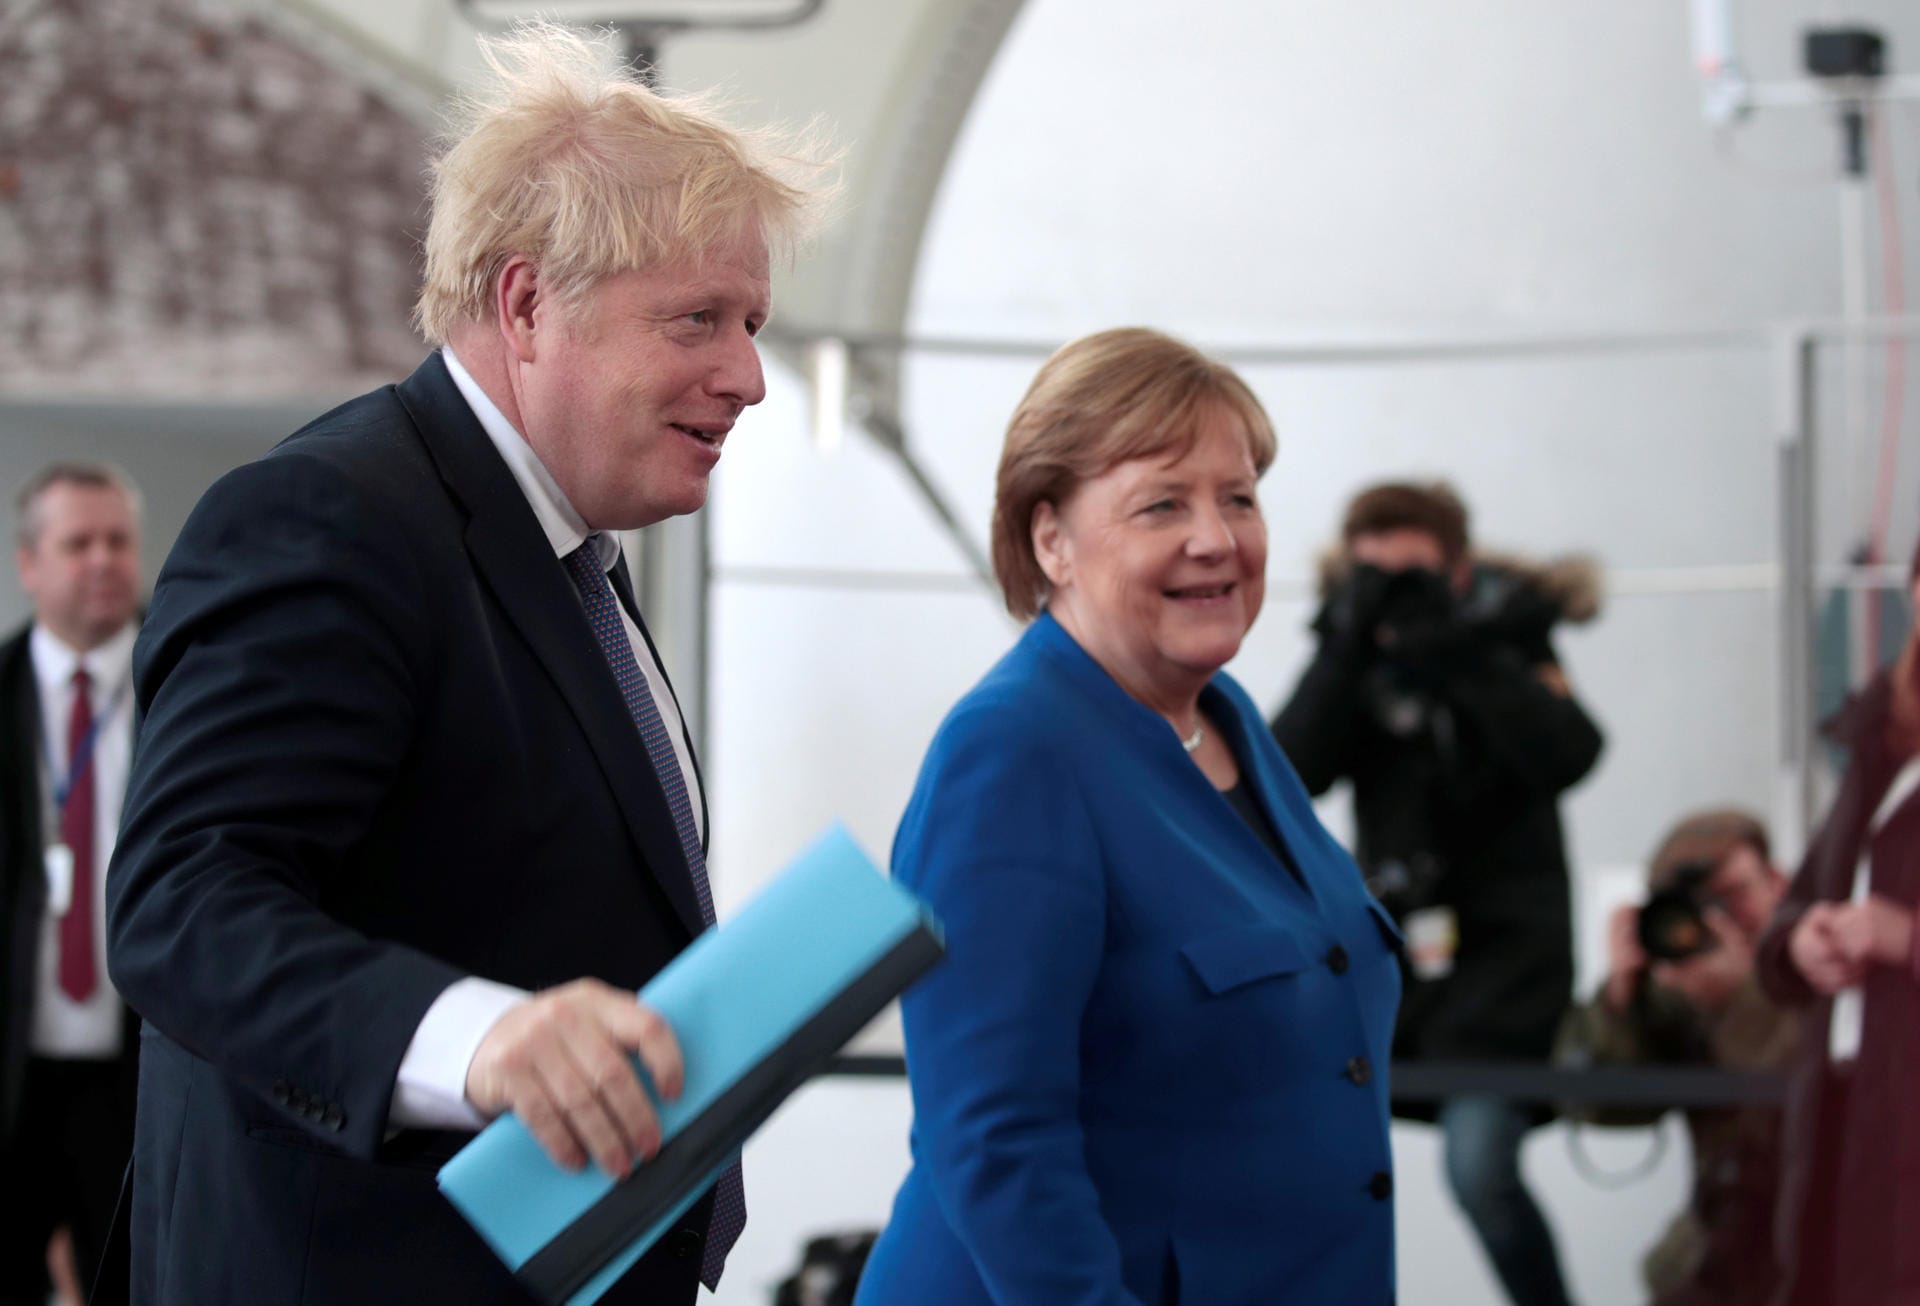 Angela Merkel wünschte Johnson viel Kraft und gute Besserung. Sie hoffe, dass Johnson das Krankenhaus bald wieder verlassen könne, schrieb Regierungssprecher Steffen Seibert am Montag auf Twitter.